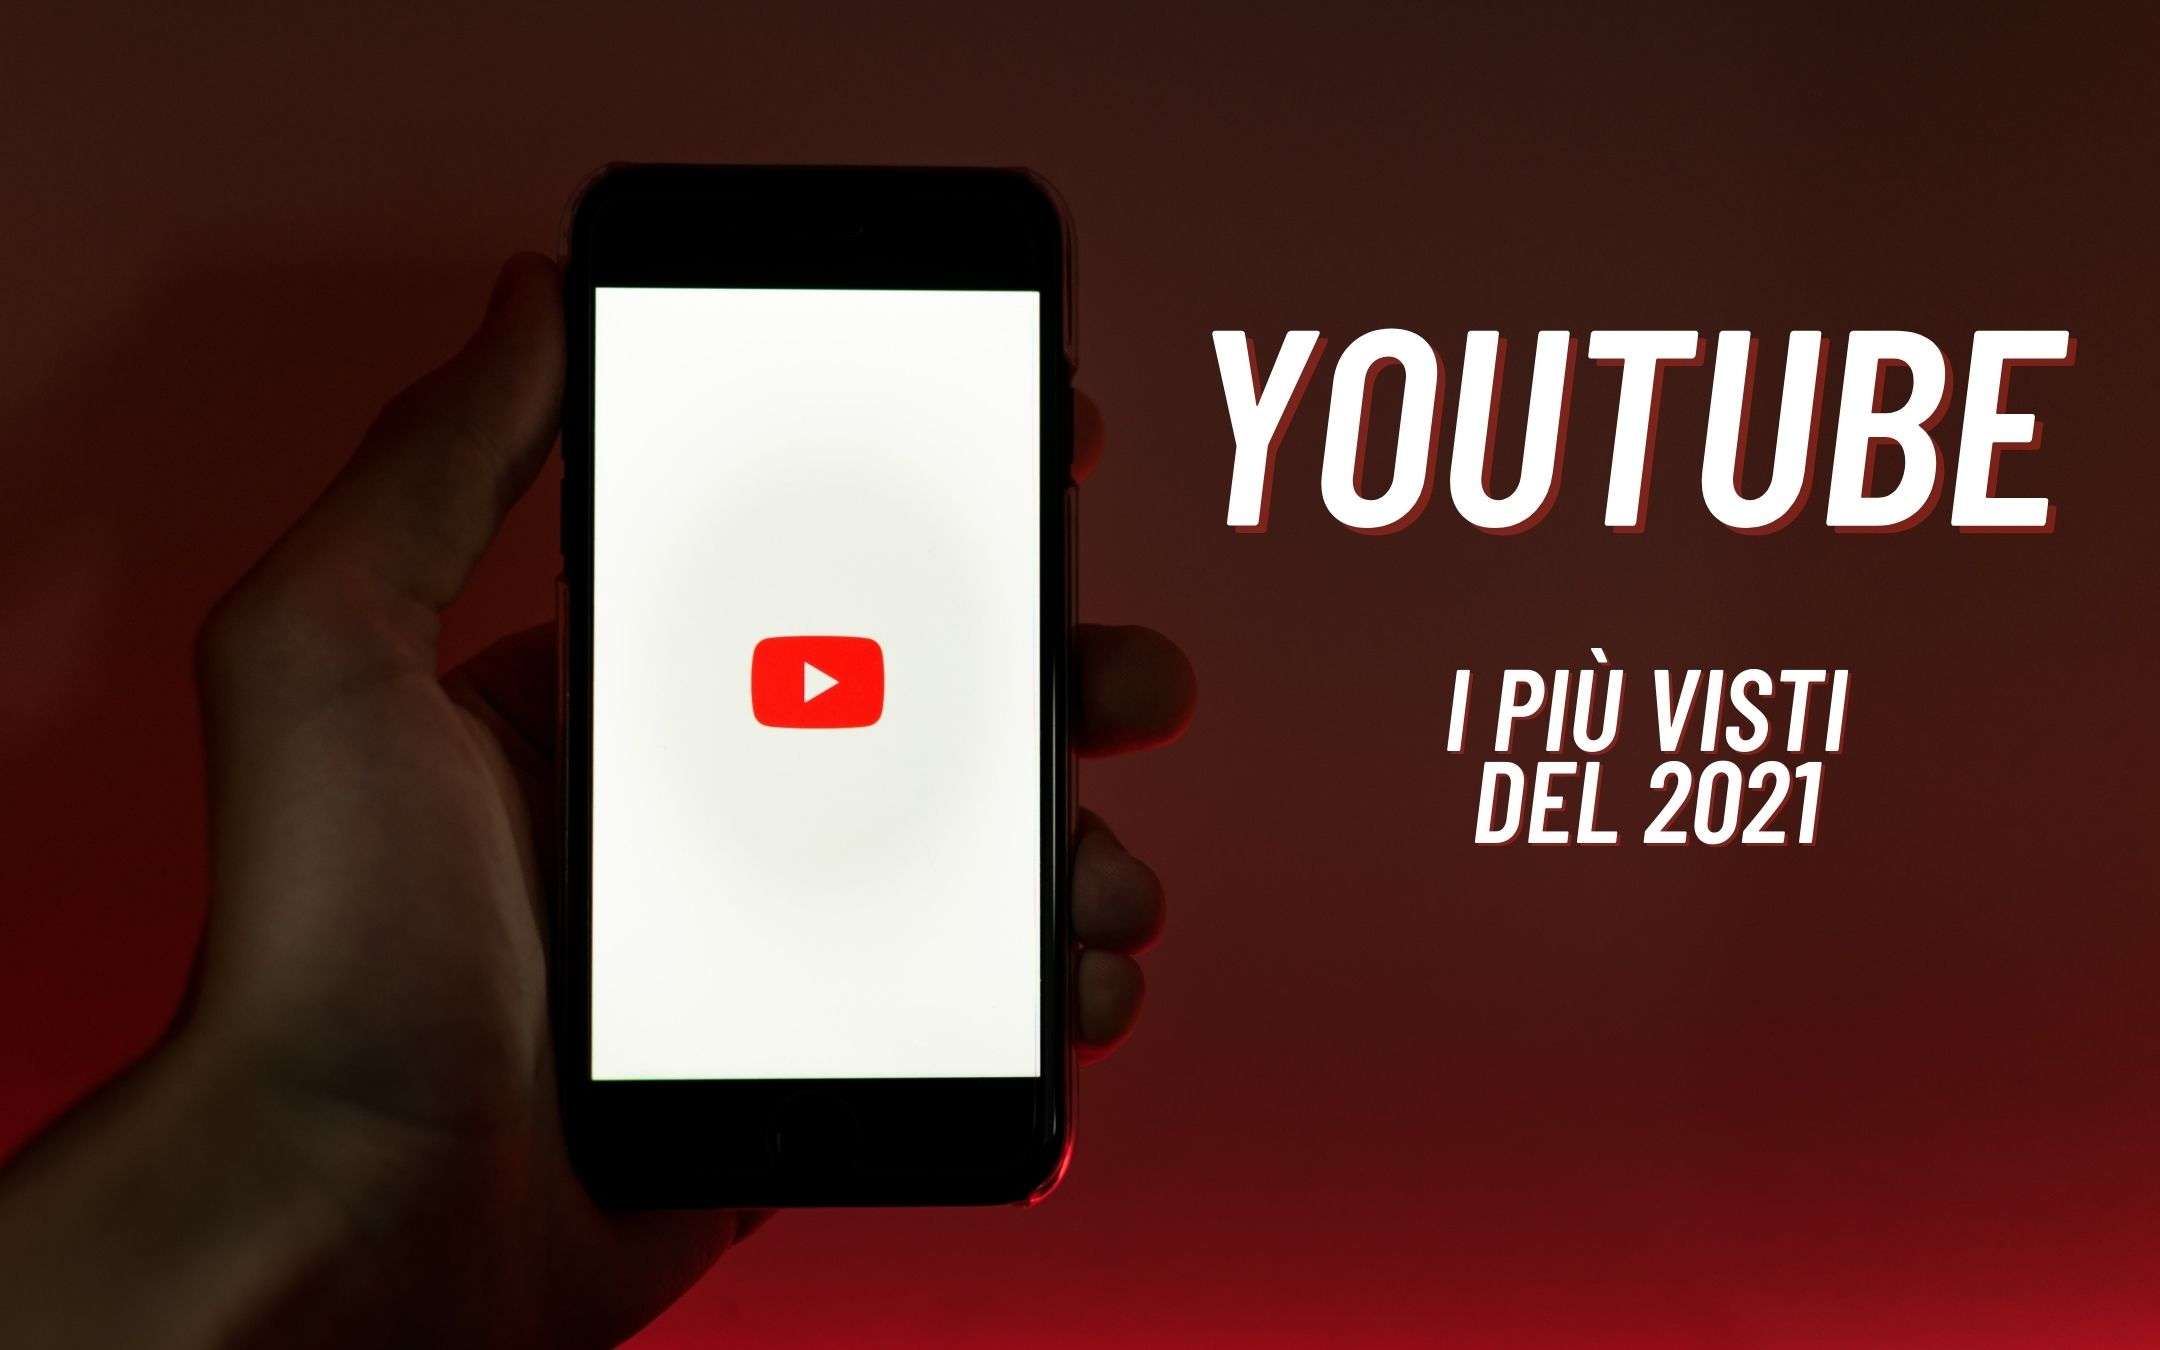 YouTube Italia: i video più popolari del 2021